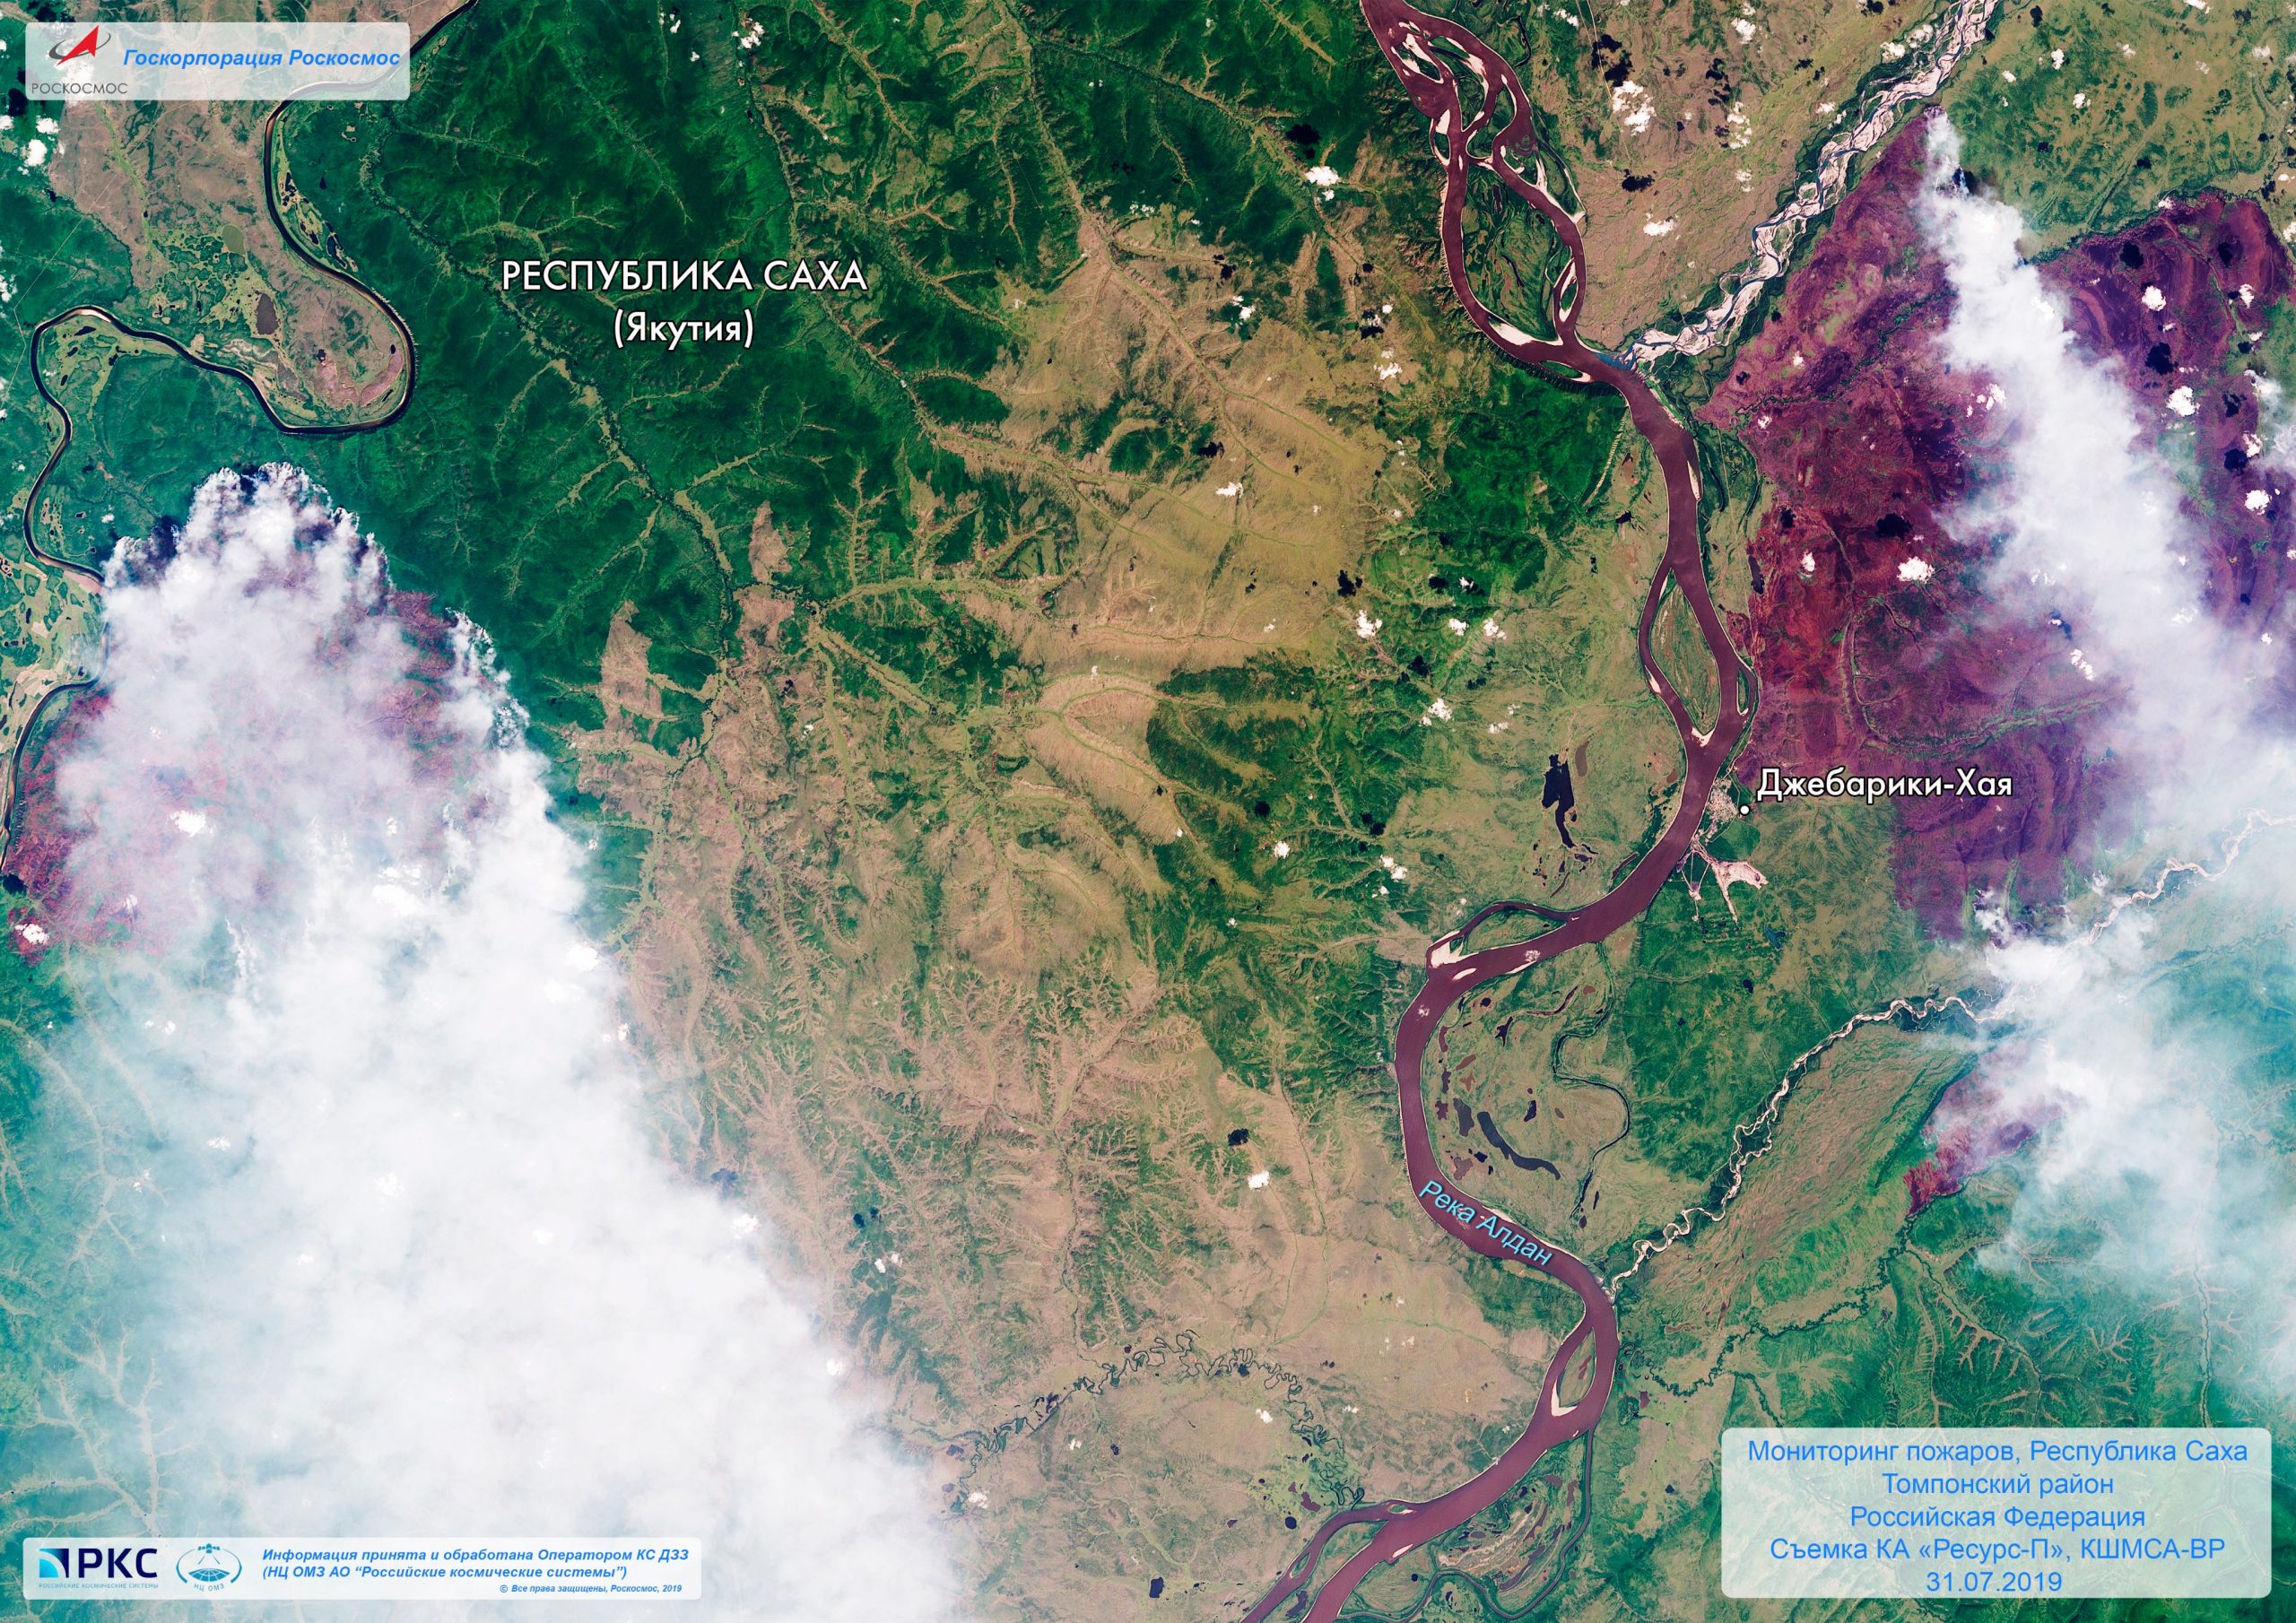 Посмотрите, как выглядят лесные пожары в Сибири из космоса